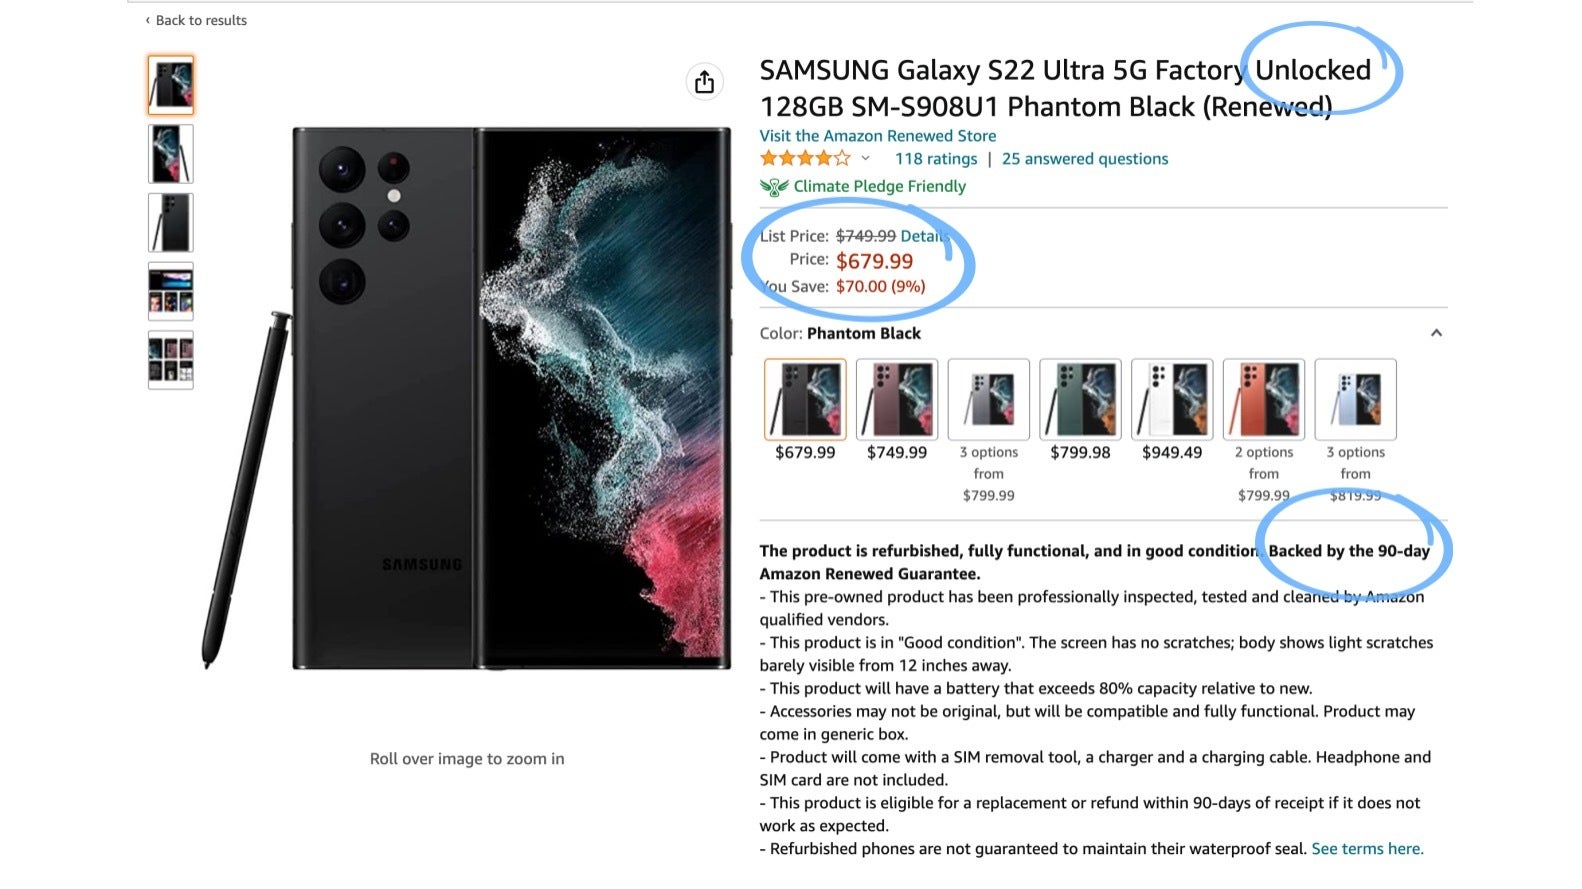 您可以以大約新 Galaxy S23 Ultra 一半的價格找到狀況良好的 Galaxy S22 Ultra。 亞馬遜英國和許多歐洲國家也提供類似的優惠，在這些國家，新的 Galaxy S23 Ultra 會貴得多（1,400 歐元）。  - Galaxy S23 Ultra：適合天文攝影愛好者的一款！ 其他人，再看看S22 Ultra